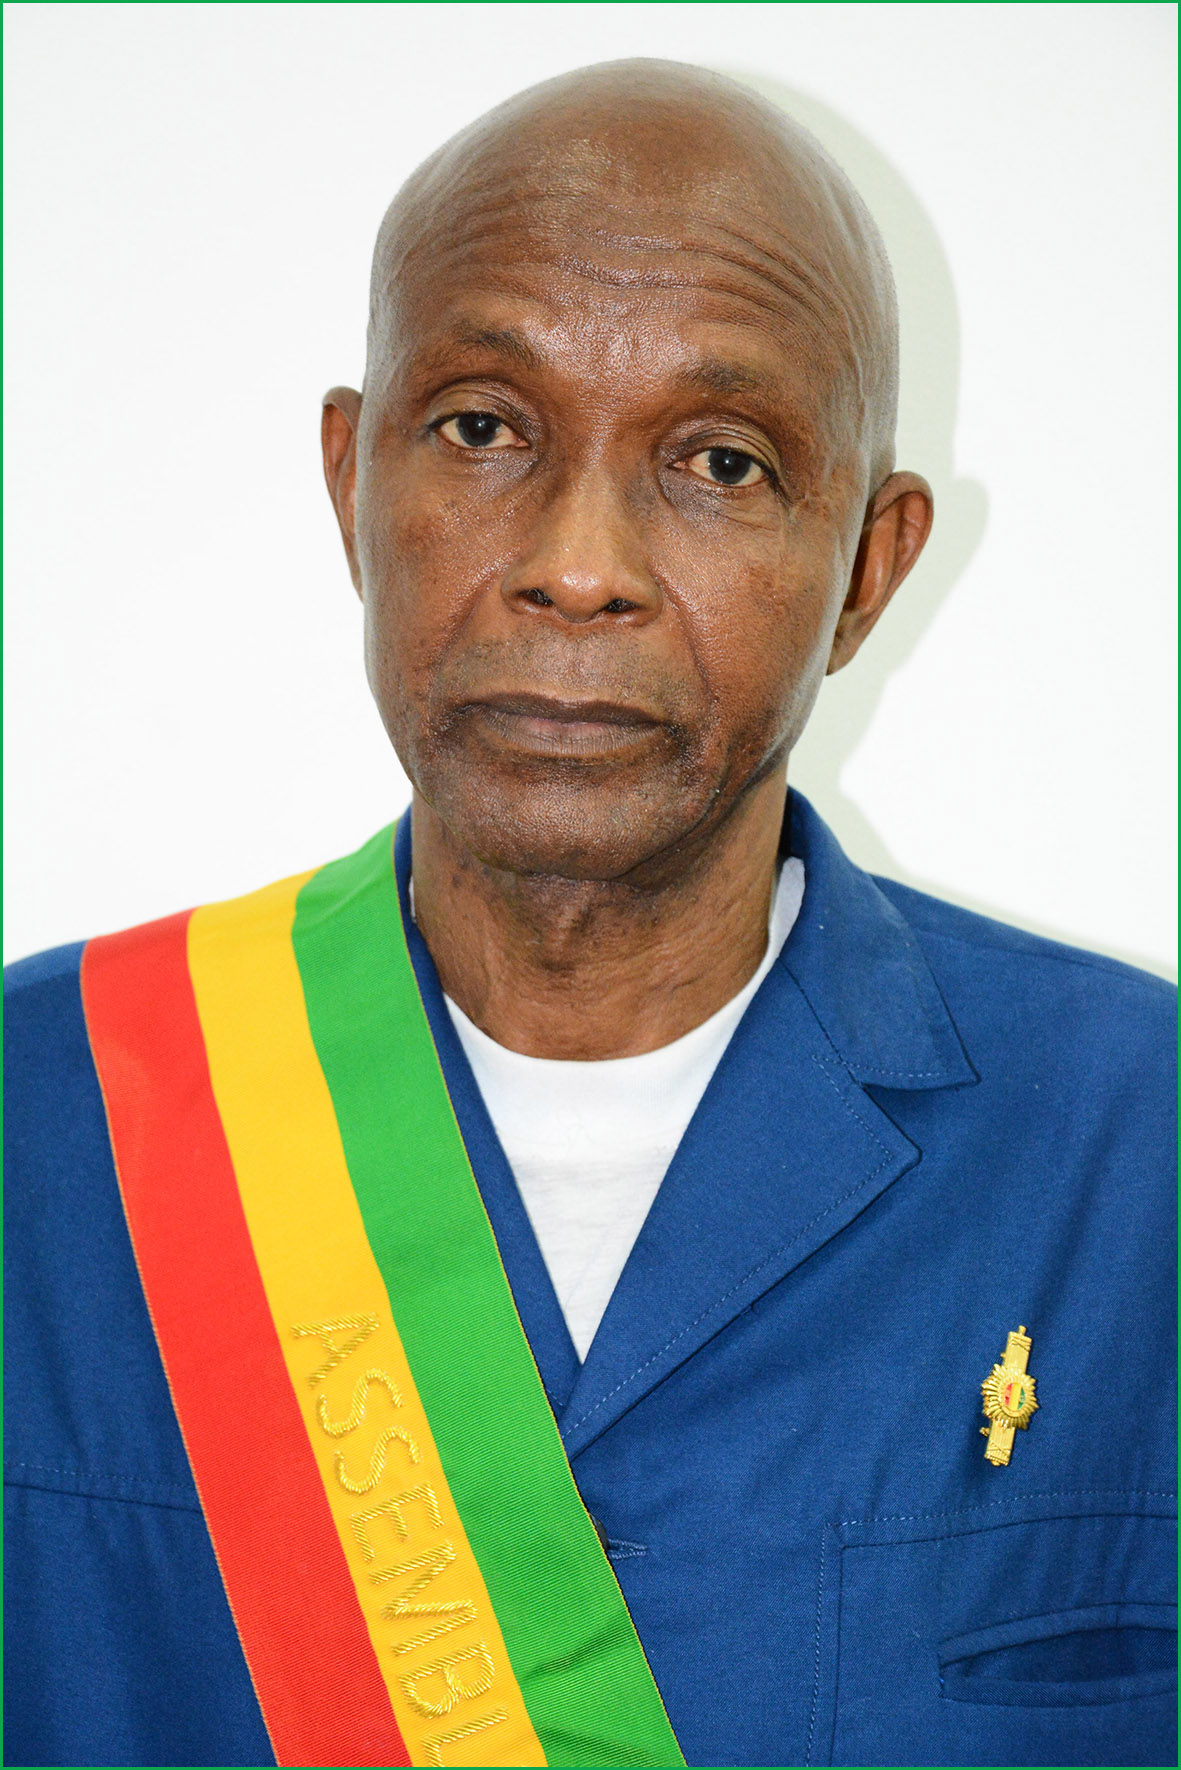 Hon. Moussa BANGOURA